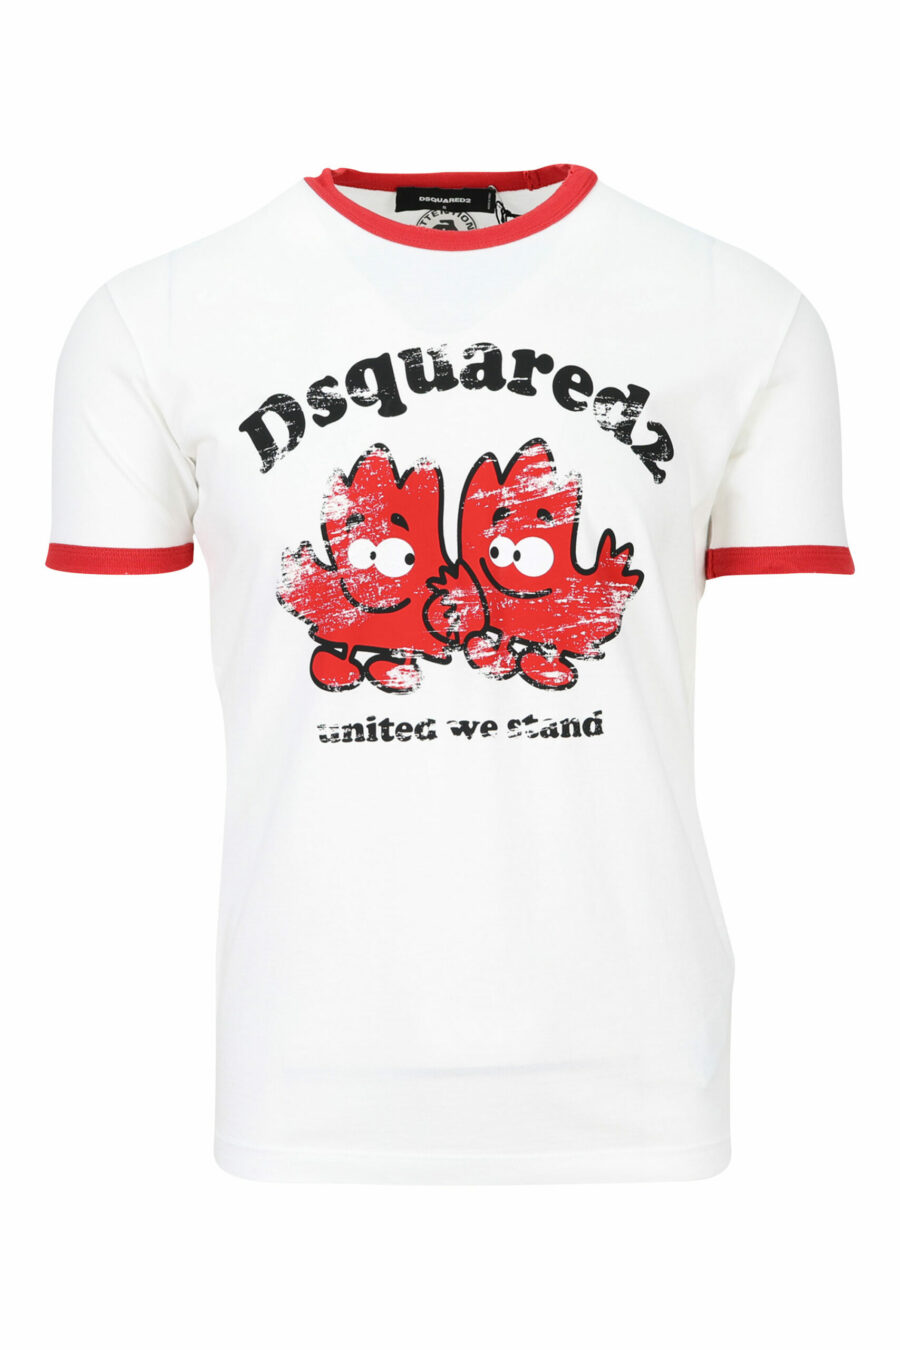 T-shirt blanc avec détails rouges et impression de feuilles - 8054148150792 scaled